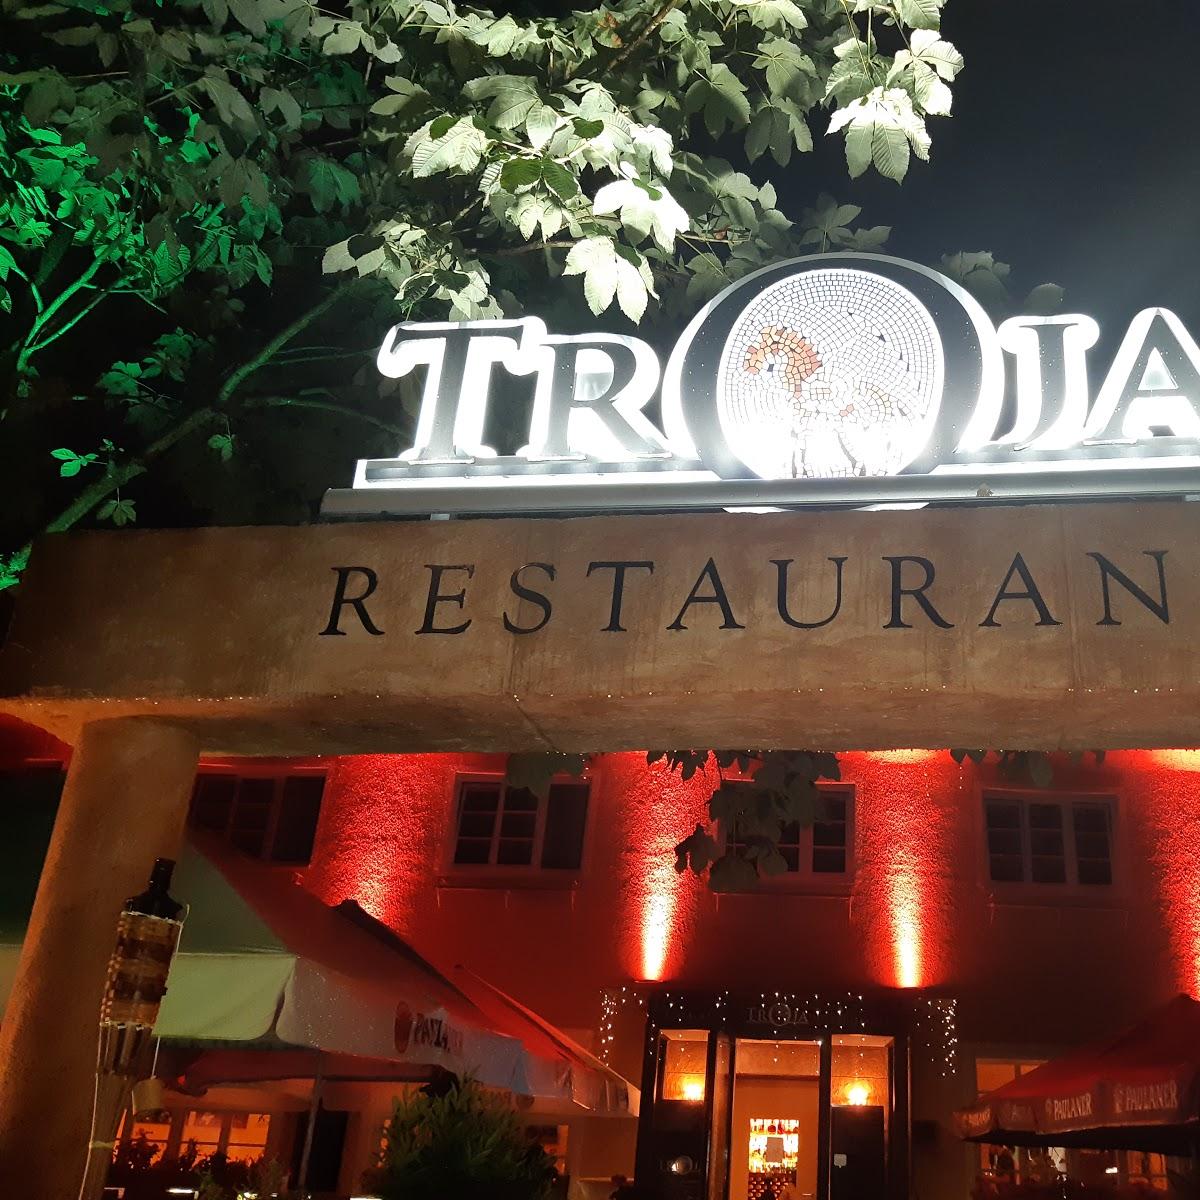 Restaurant "Troja" in München